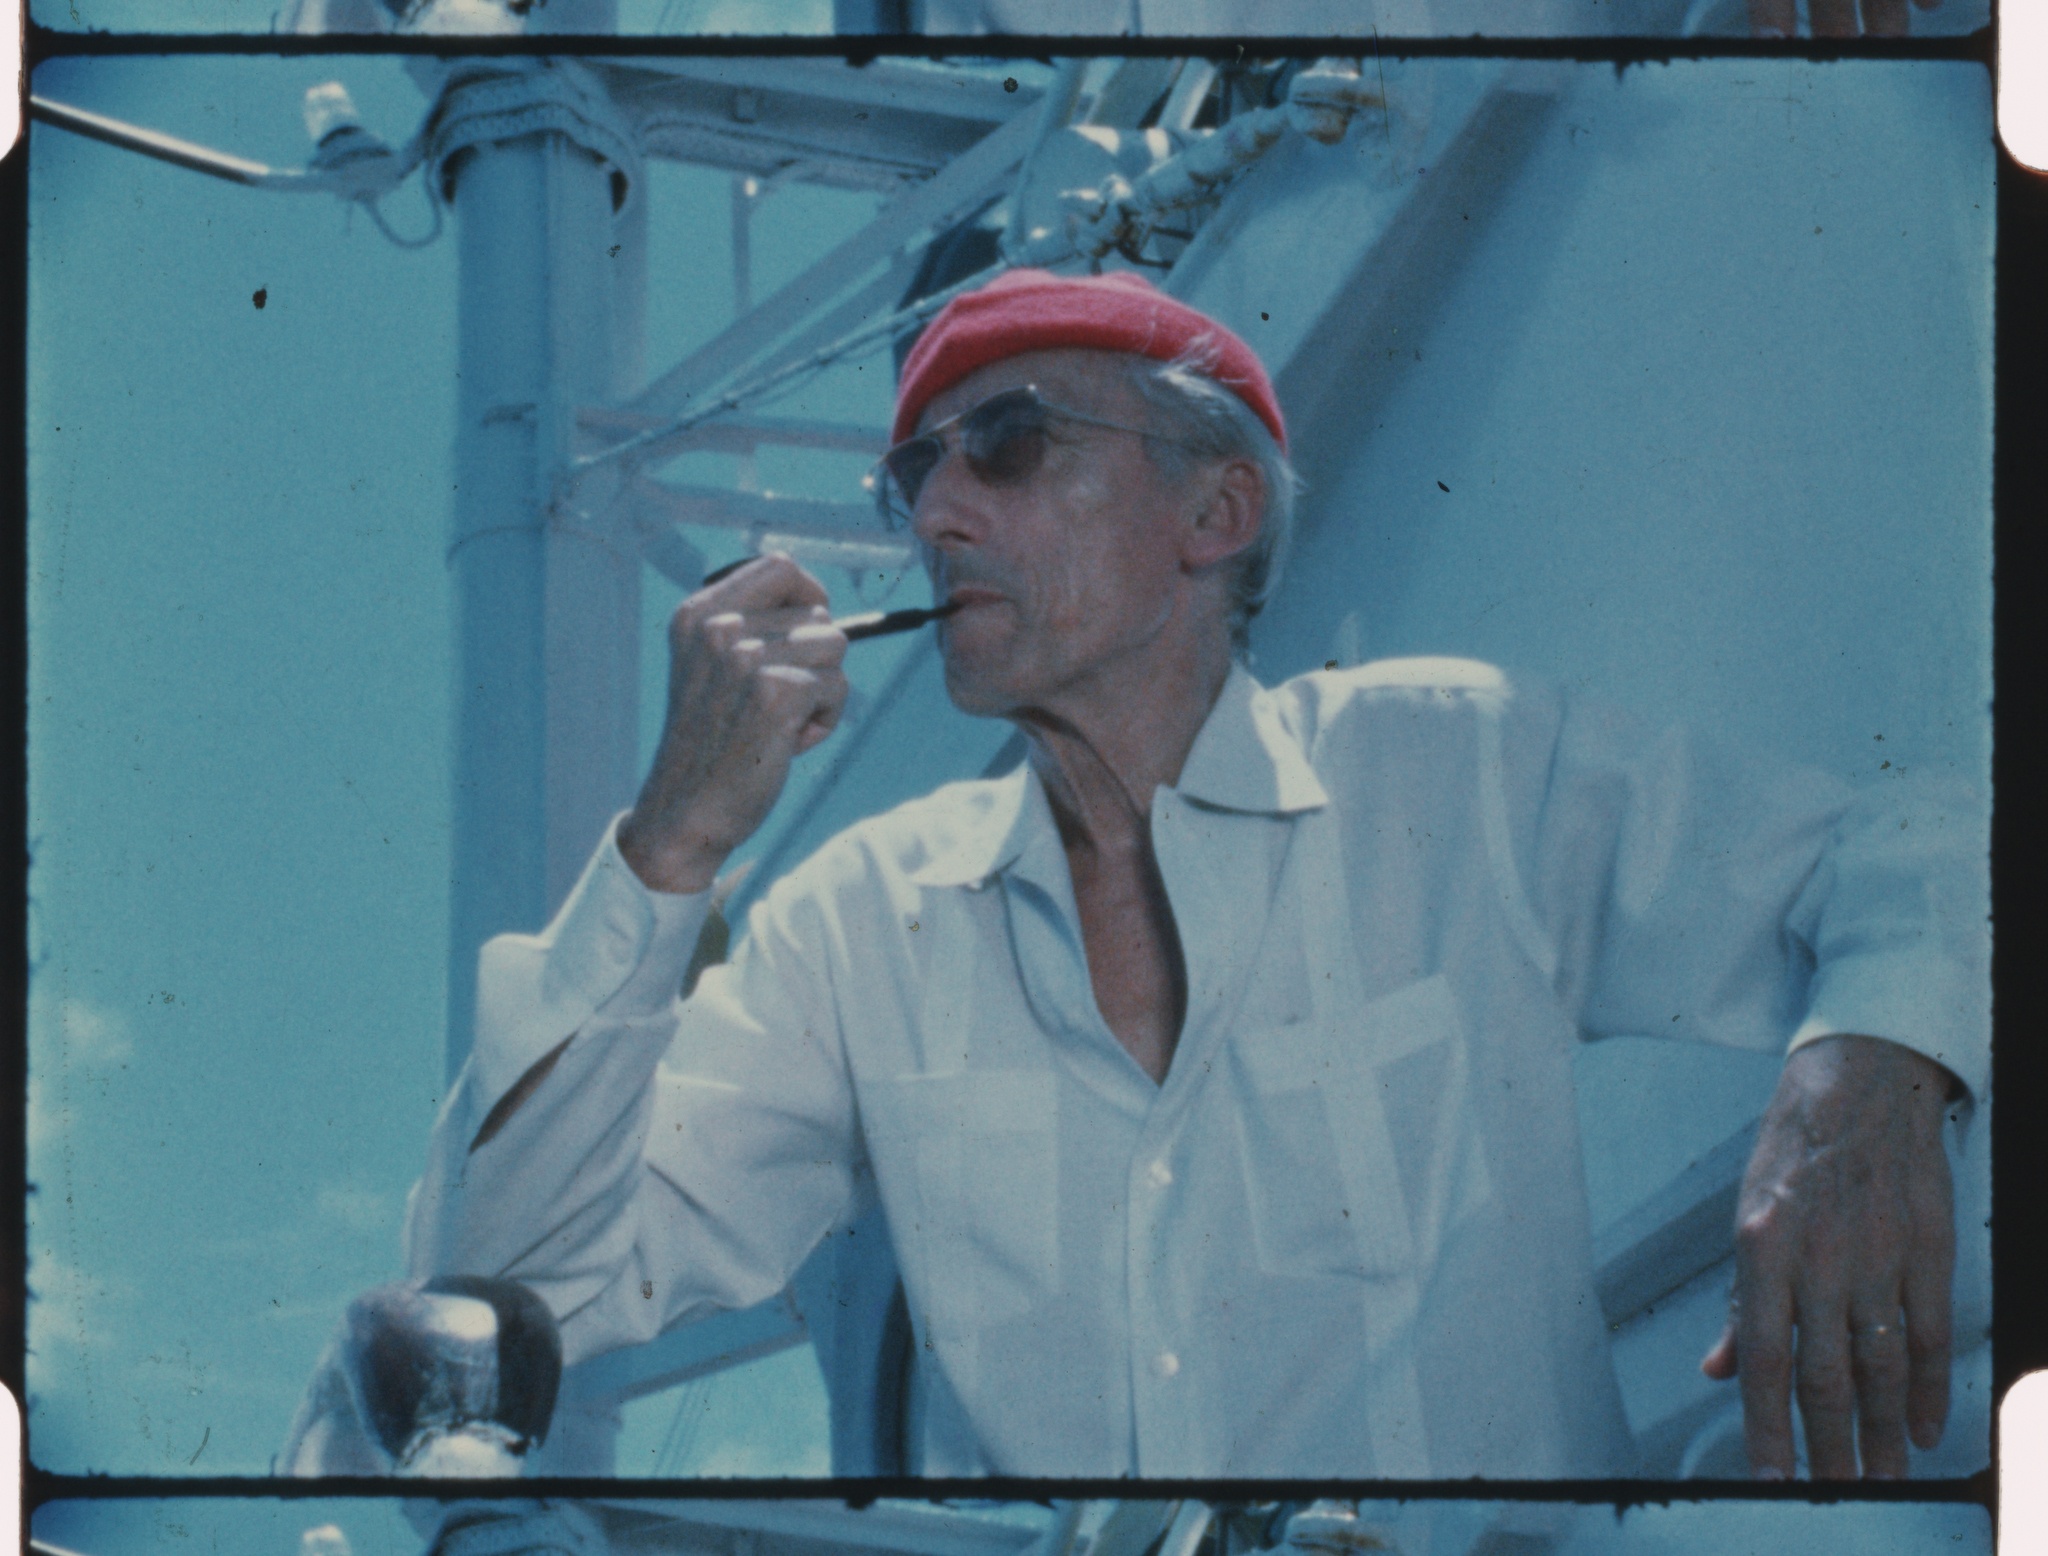 Jacques Cousteau con l'iconico berretto rosso a bordo della sua nave Calypso negli Anni '70